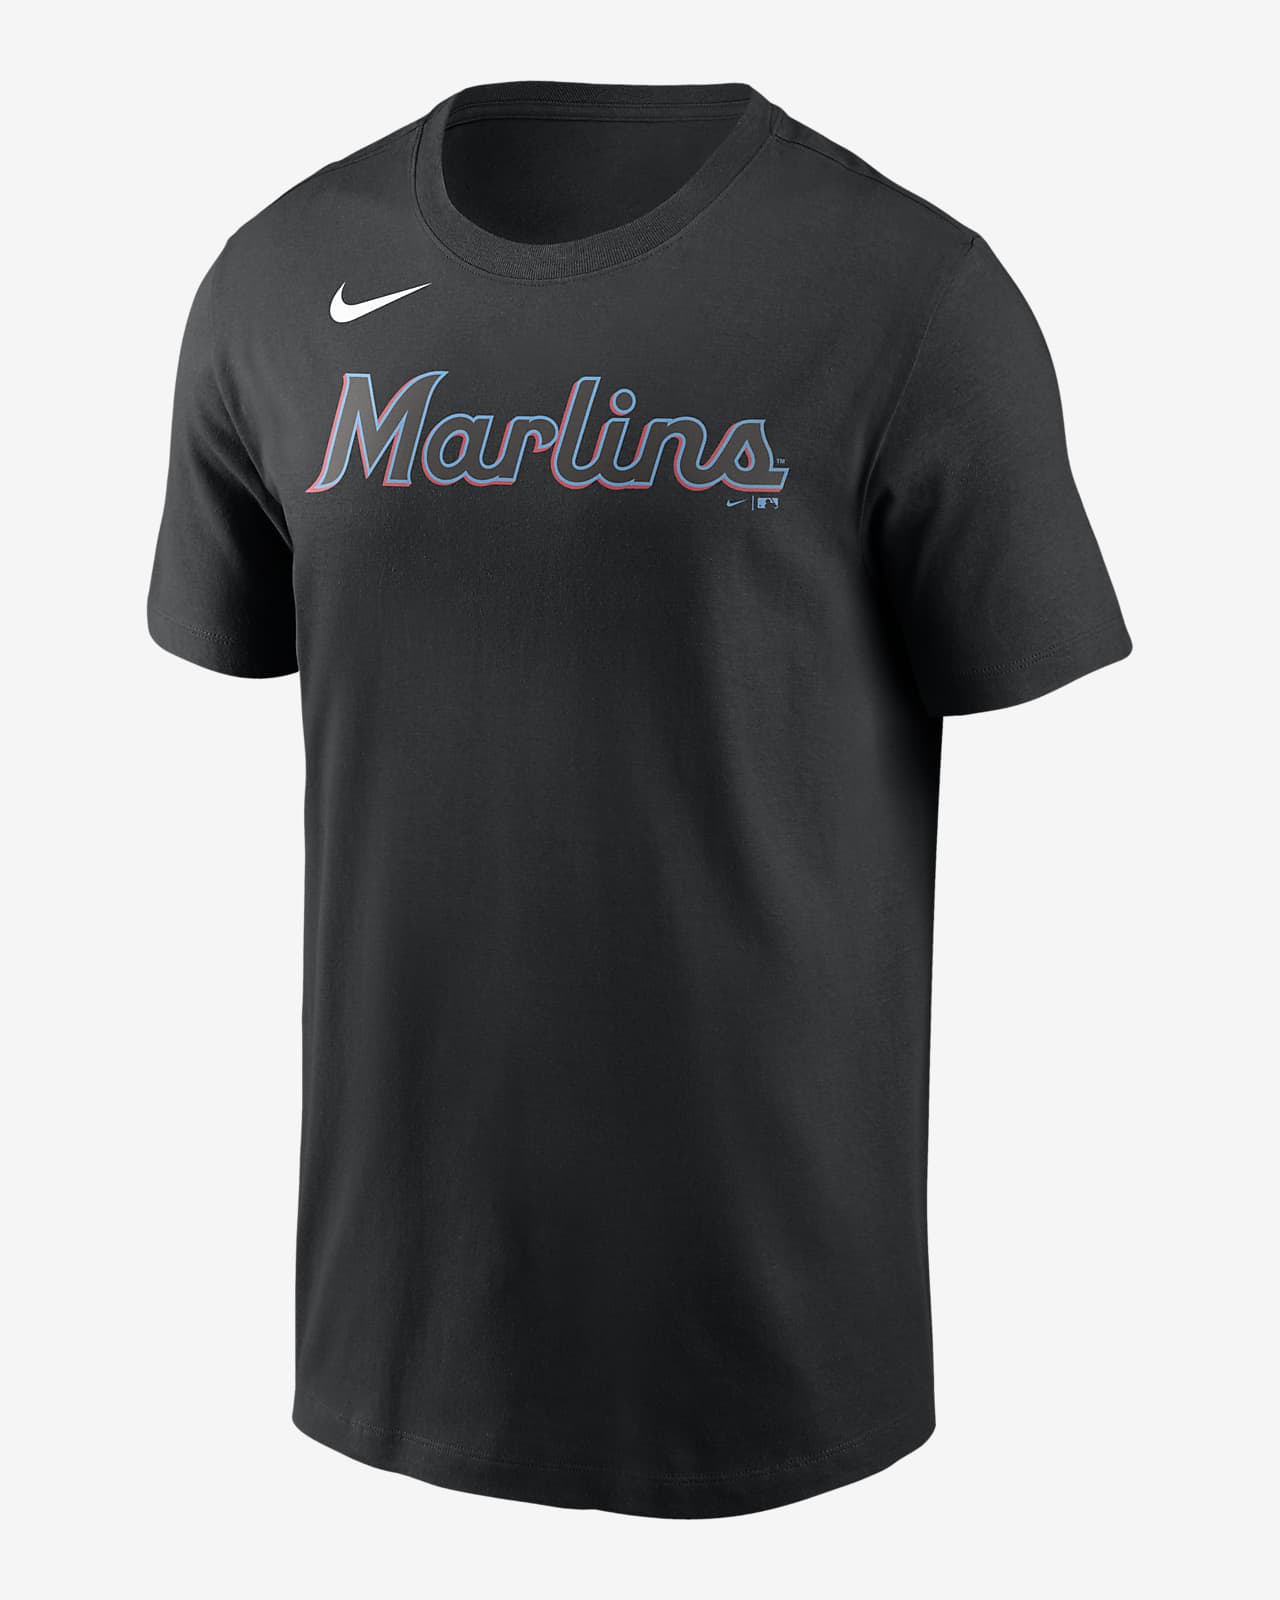 marlins baseball shirt